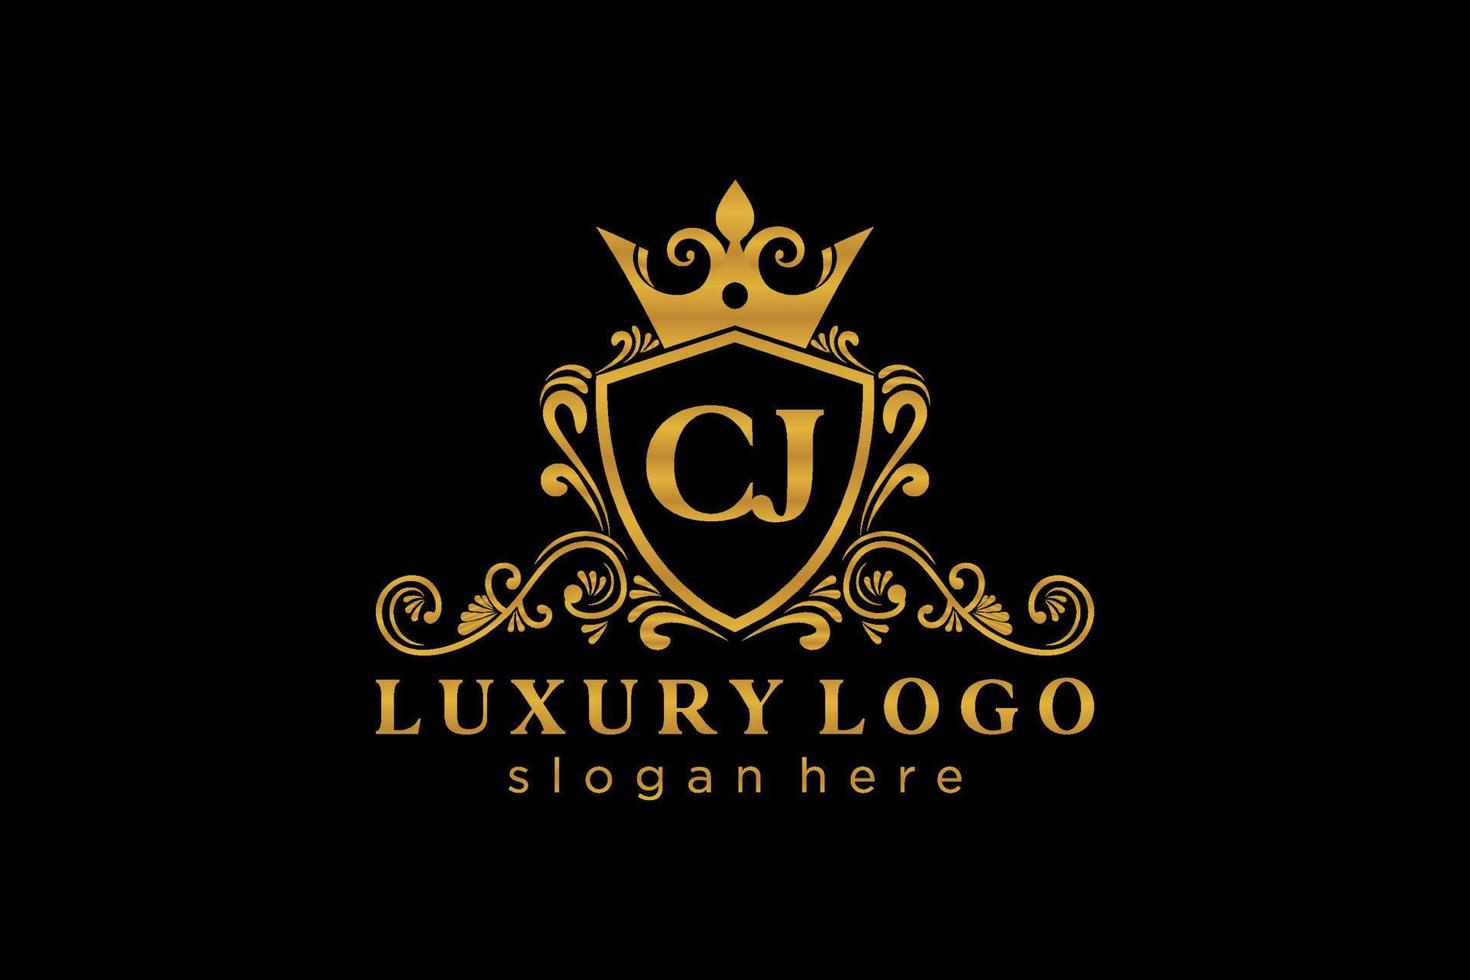 königliche luxus-logoschablone des ursprünglichen cj-buchstabens in der vektorkunst für restaurant, lizenzgebühren, boutique, café, hotel, heraldisch, schmuck, mode und andere vektorillustration. vektor